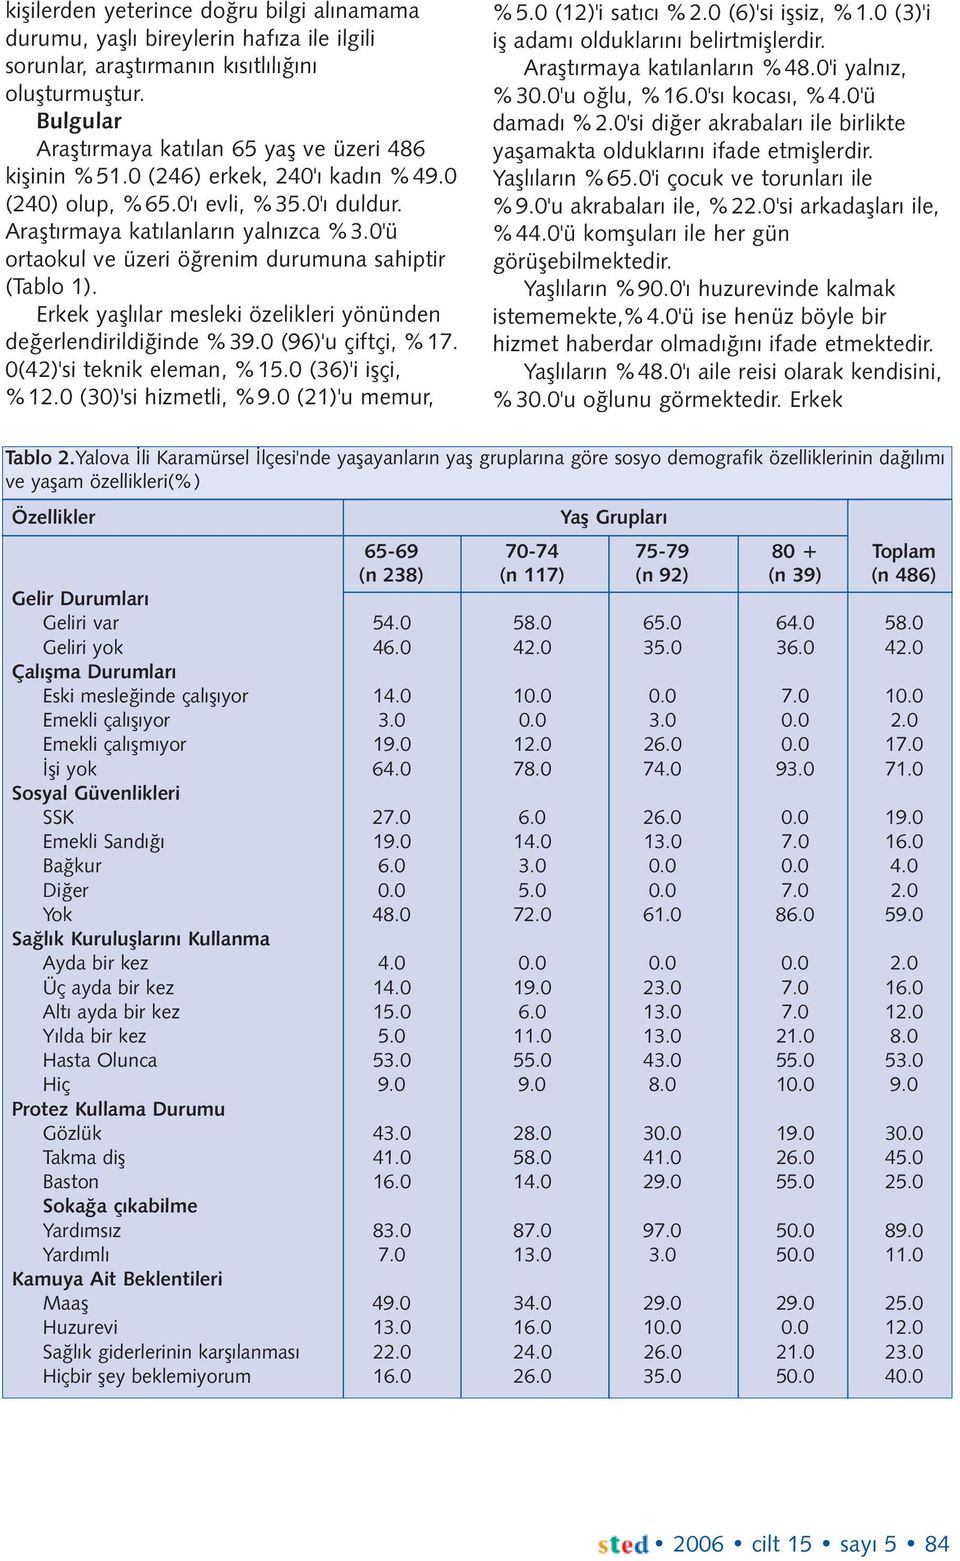 Erkek yaþlýlar mesleki özelikleri yönünden deðerlendirildiðinde %39.0 (96)'u çiftçi, %17. 0(42)'si teknik eleman, %15.0 (36)'i iþçi, %12.0 (30)'si hizmetli, %9.0 (21)'u memur, %5.0 (12)'i satýcý %2.